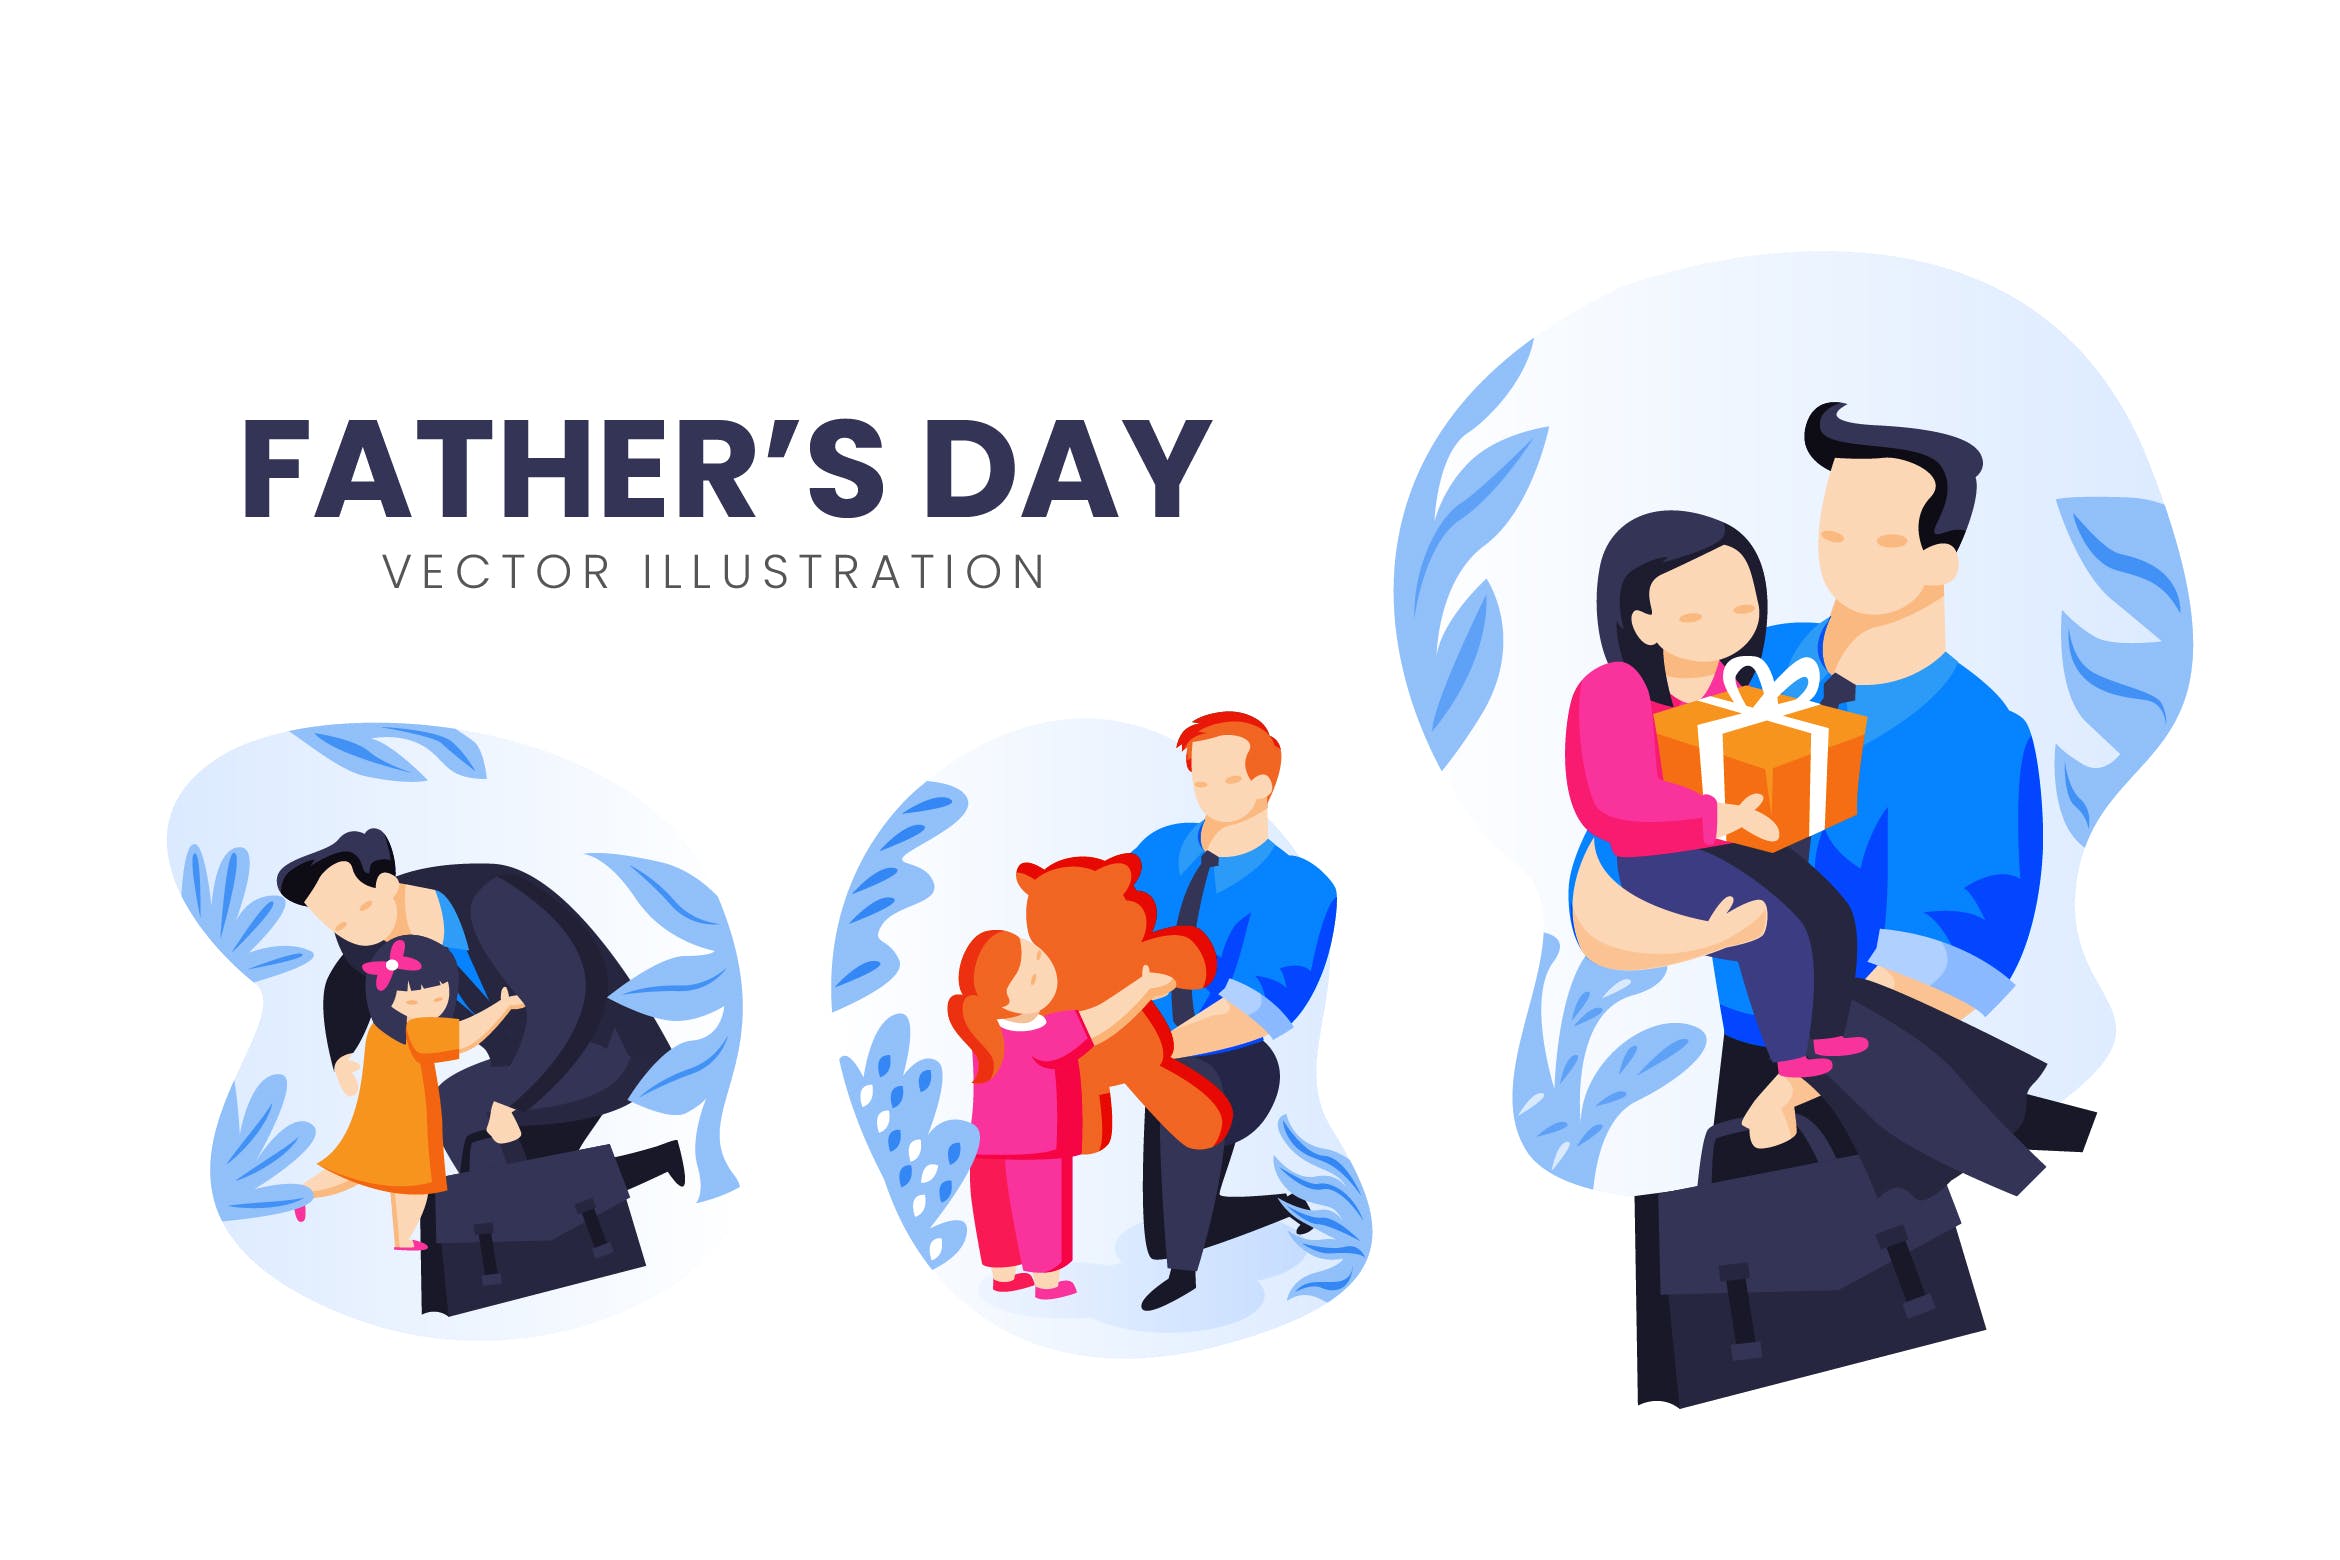 父亲节主题人物形象非凡图库精选手绘插画矢量素材 Fathers Day Vector Character Set插图